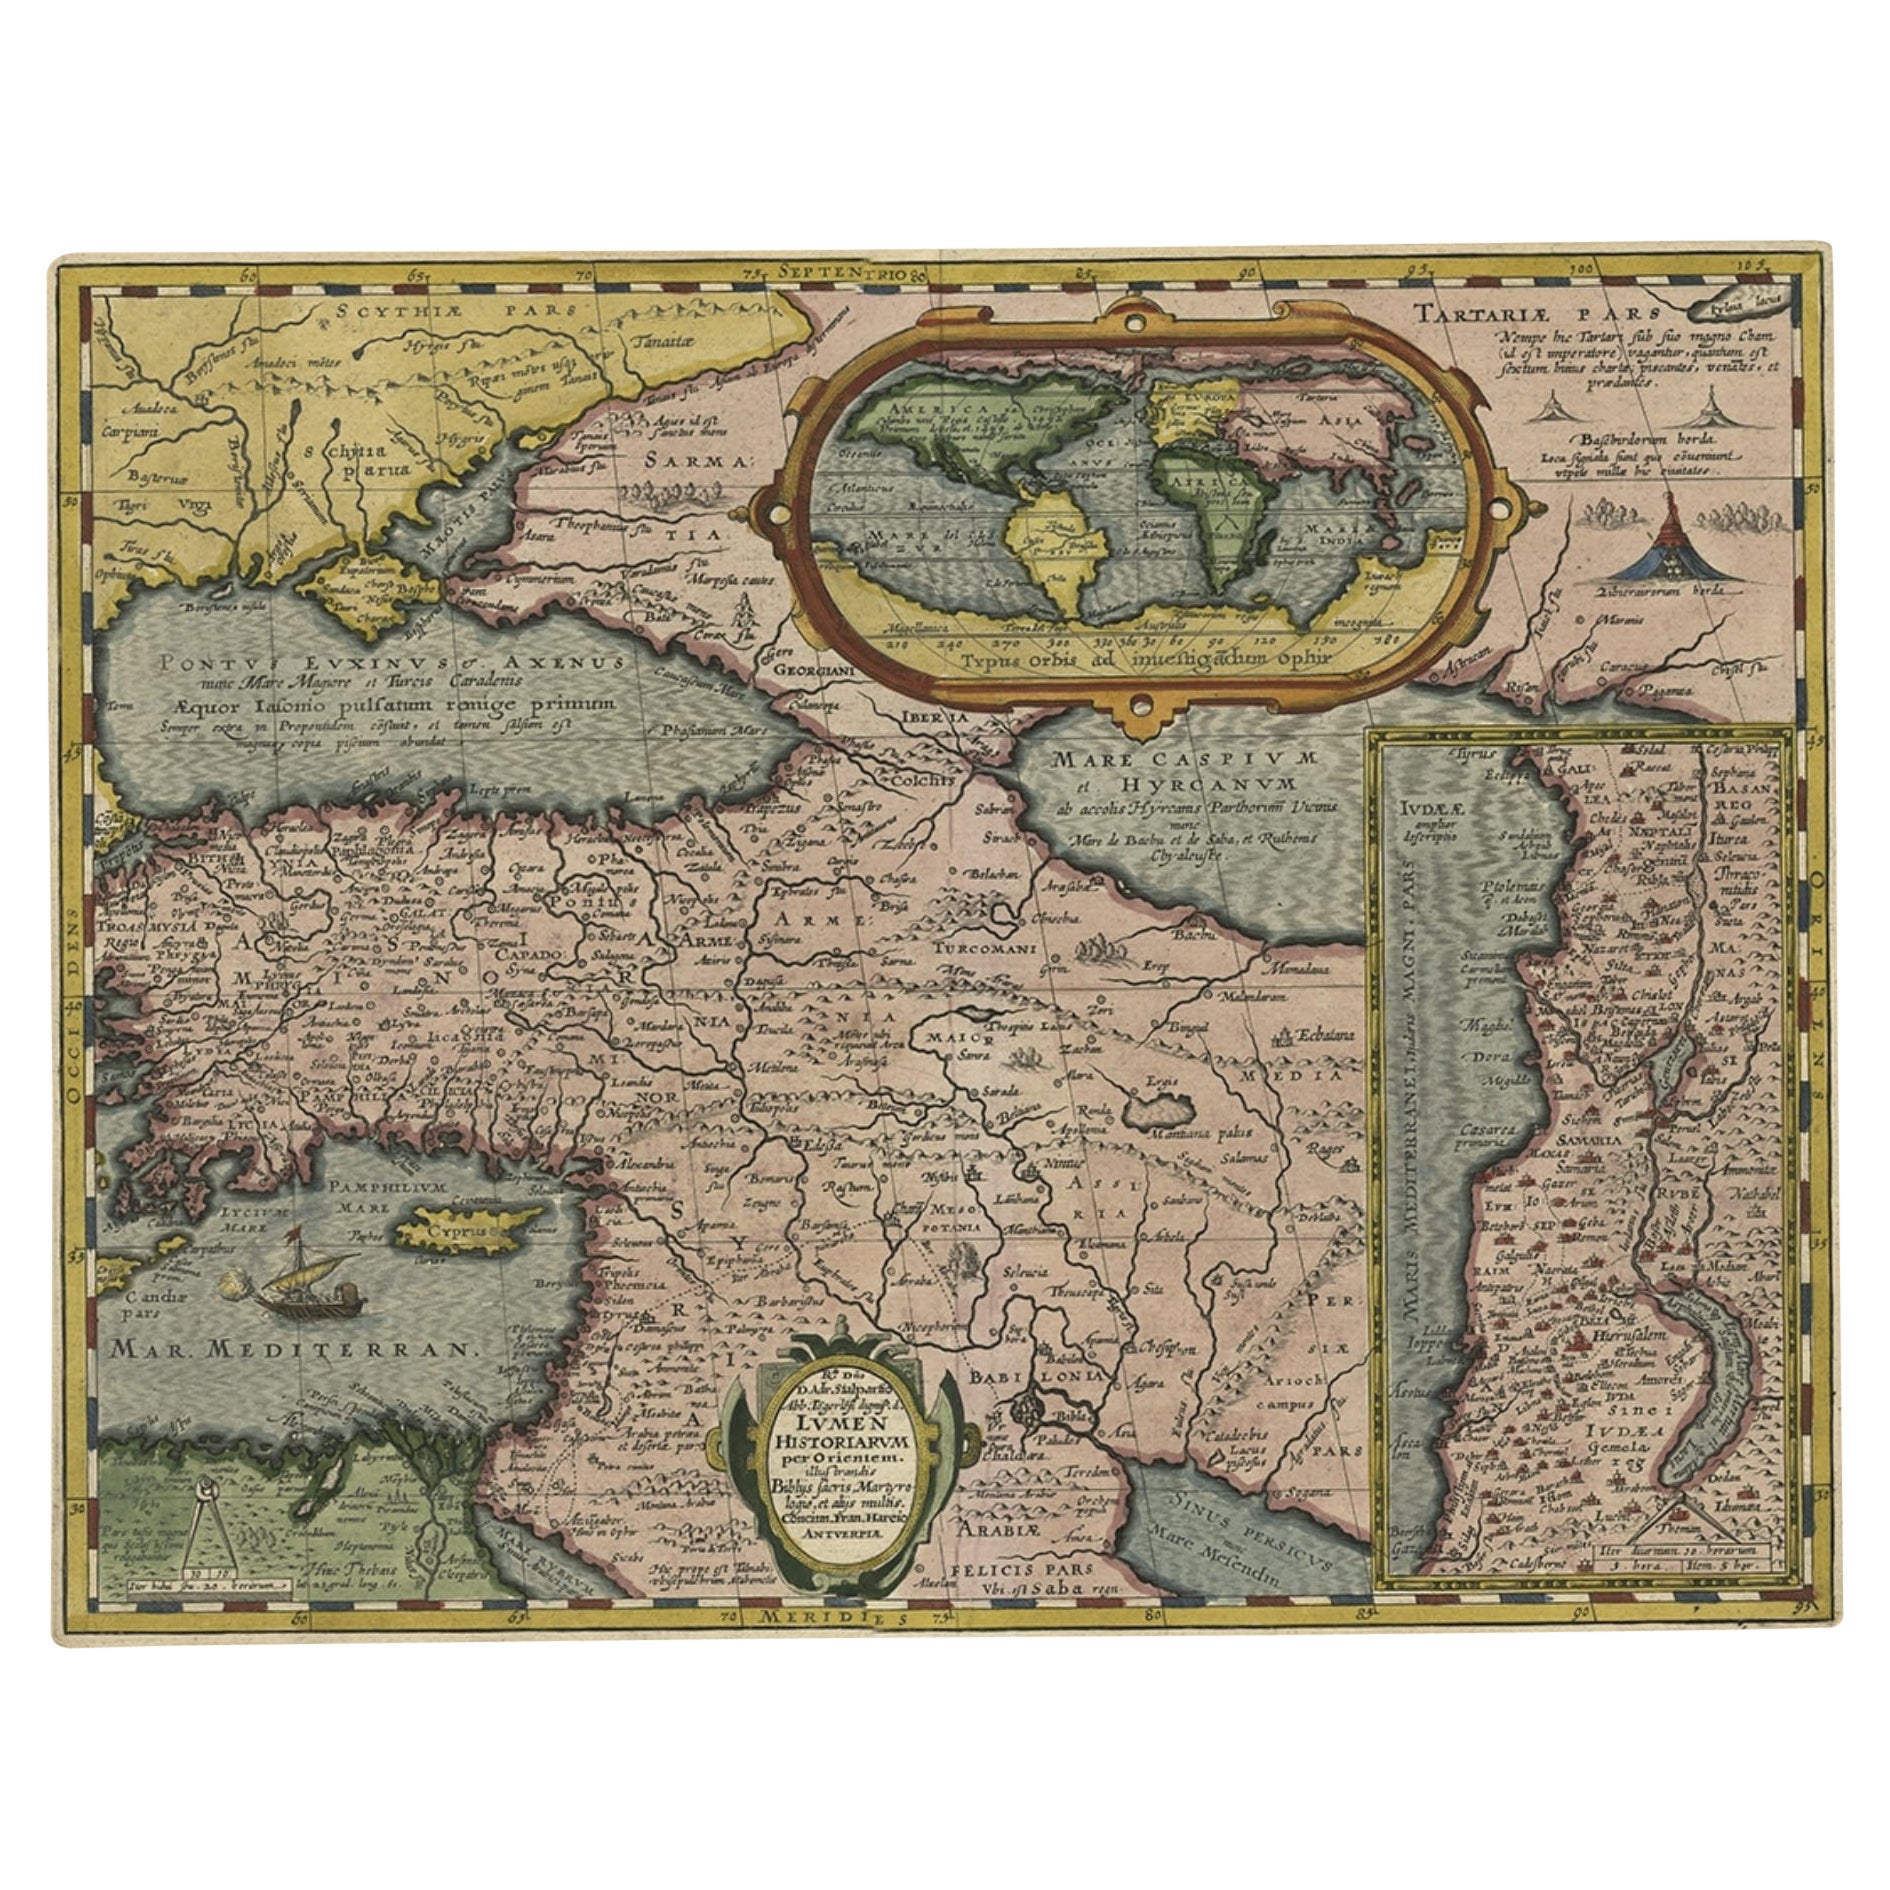 Seltene antike Karte des Nahen Osten, umgeben von lateinischem Text, 1624